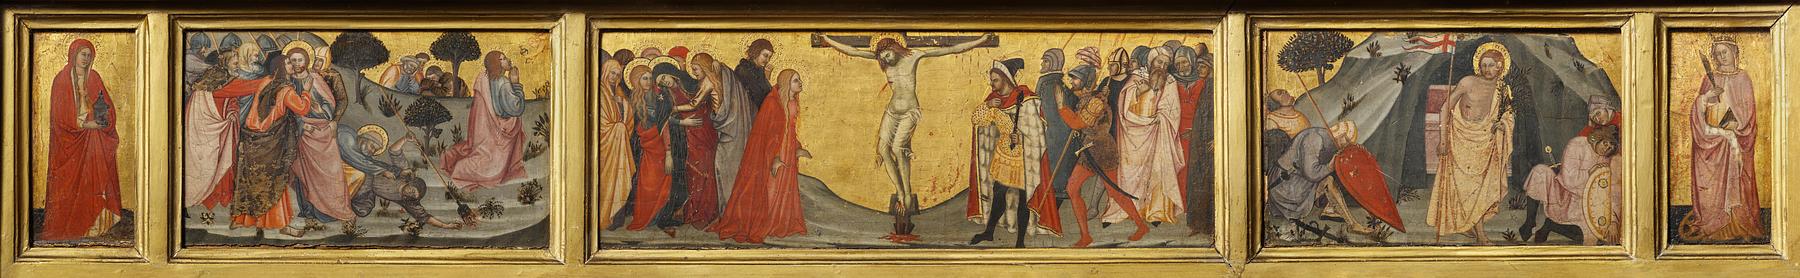 Predella med fremstillinger af Kristus i Gethsemane, Korsfæstelsen, Opstandelsen, Maria Magdalena og Sankt Catharina, B2